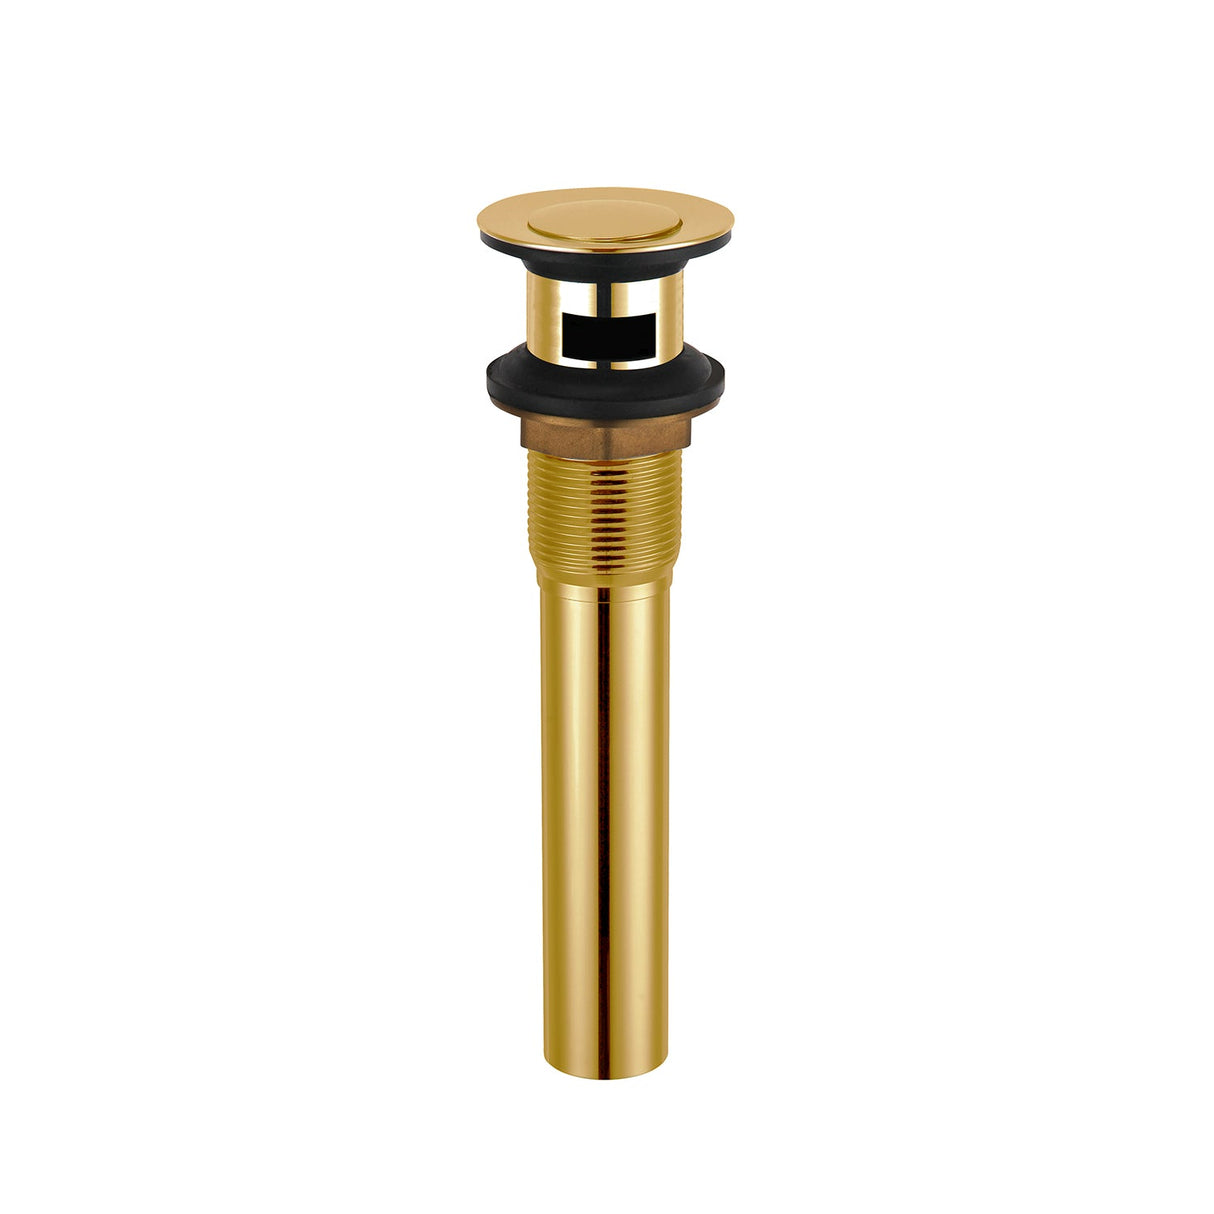 DAX Brass Round Vanity Sink Pop-Up Drain with Overflow, Brushed Gold DAX-82019-BG